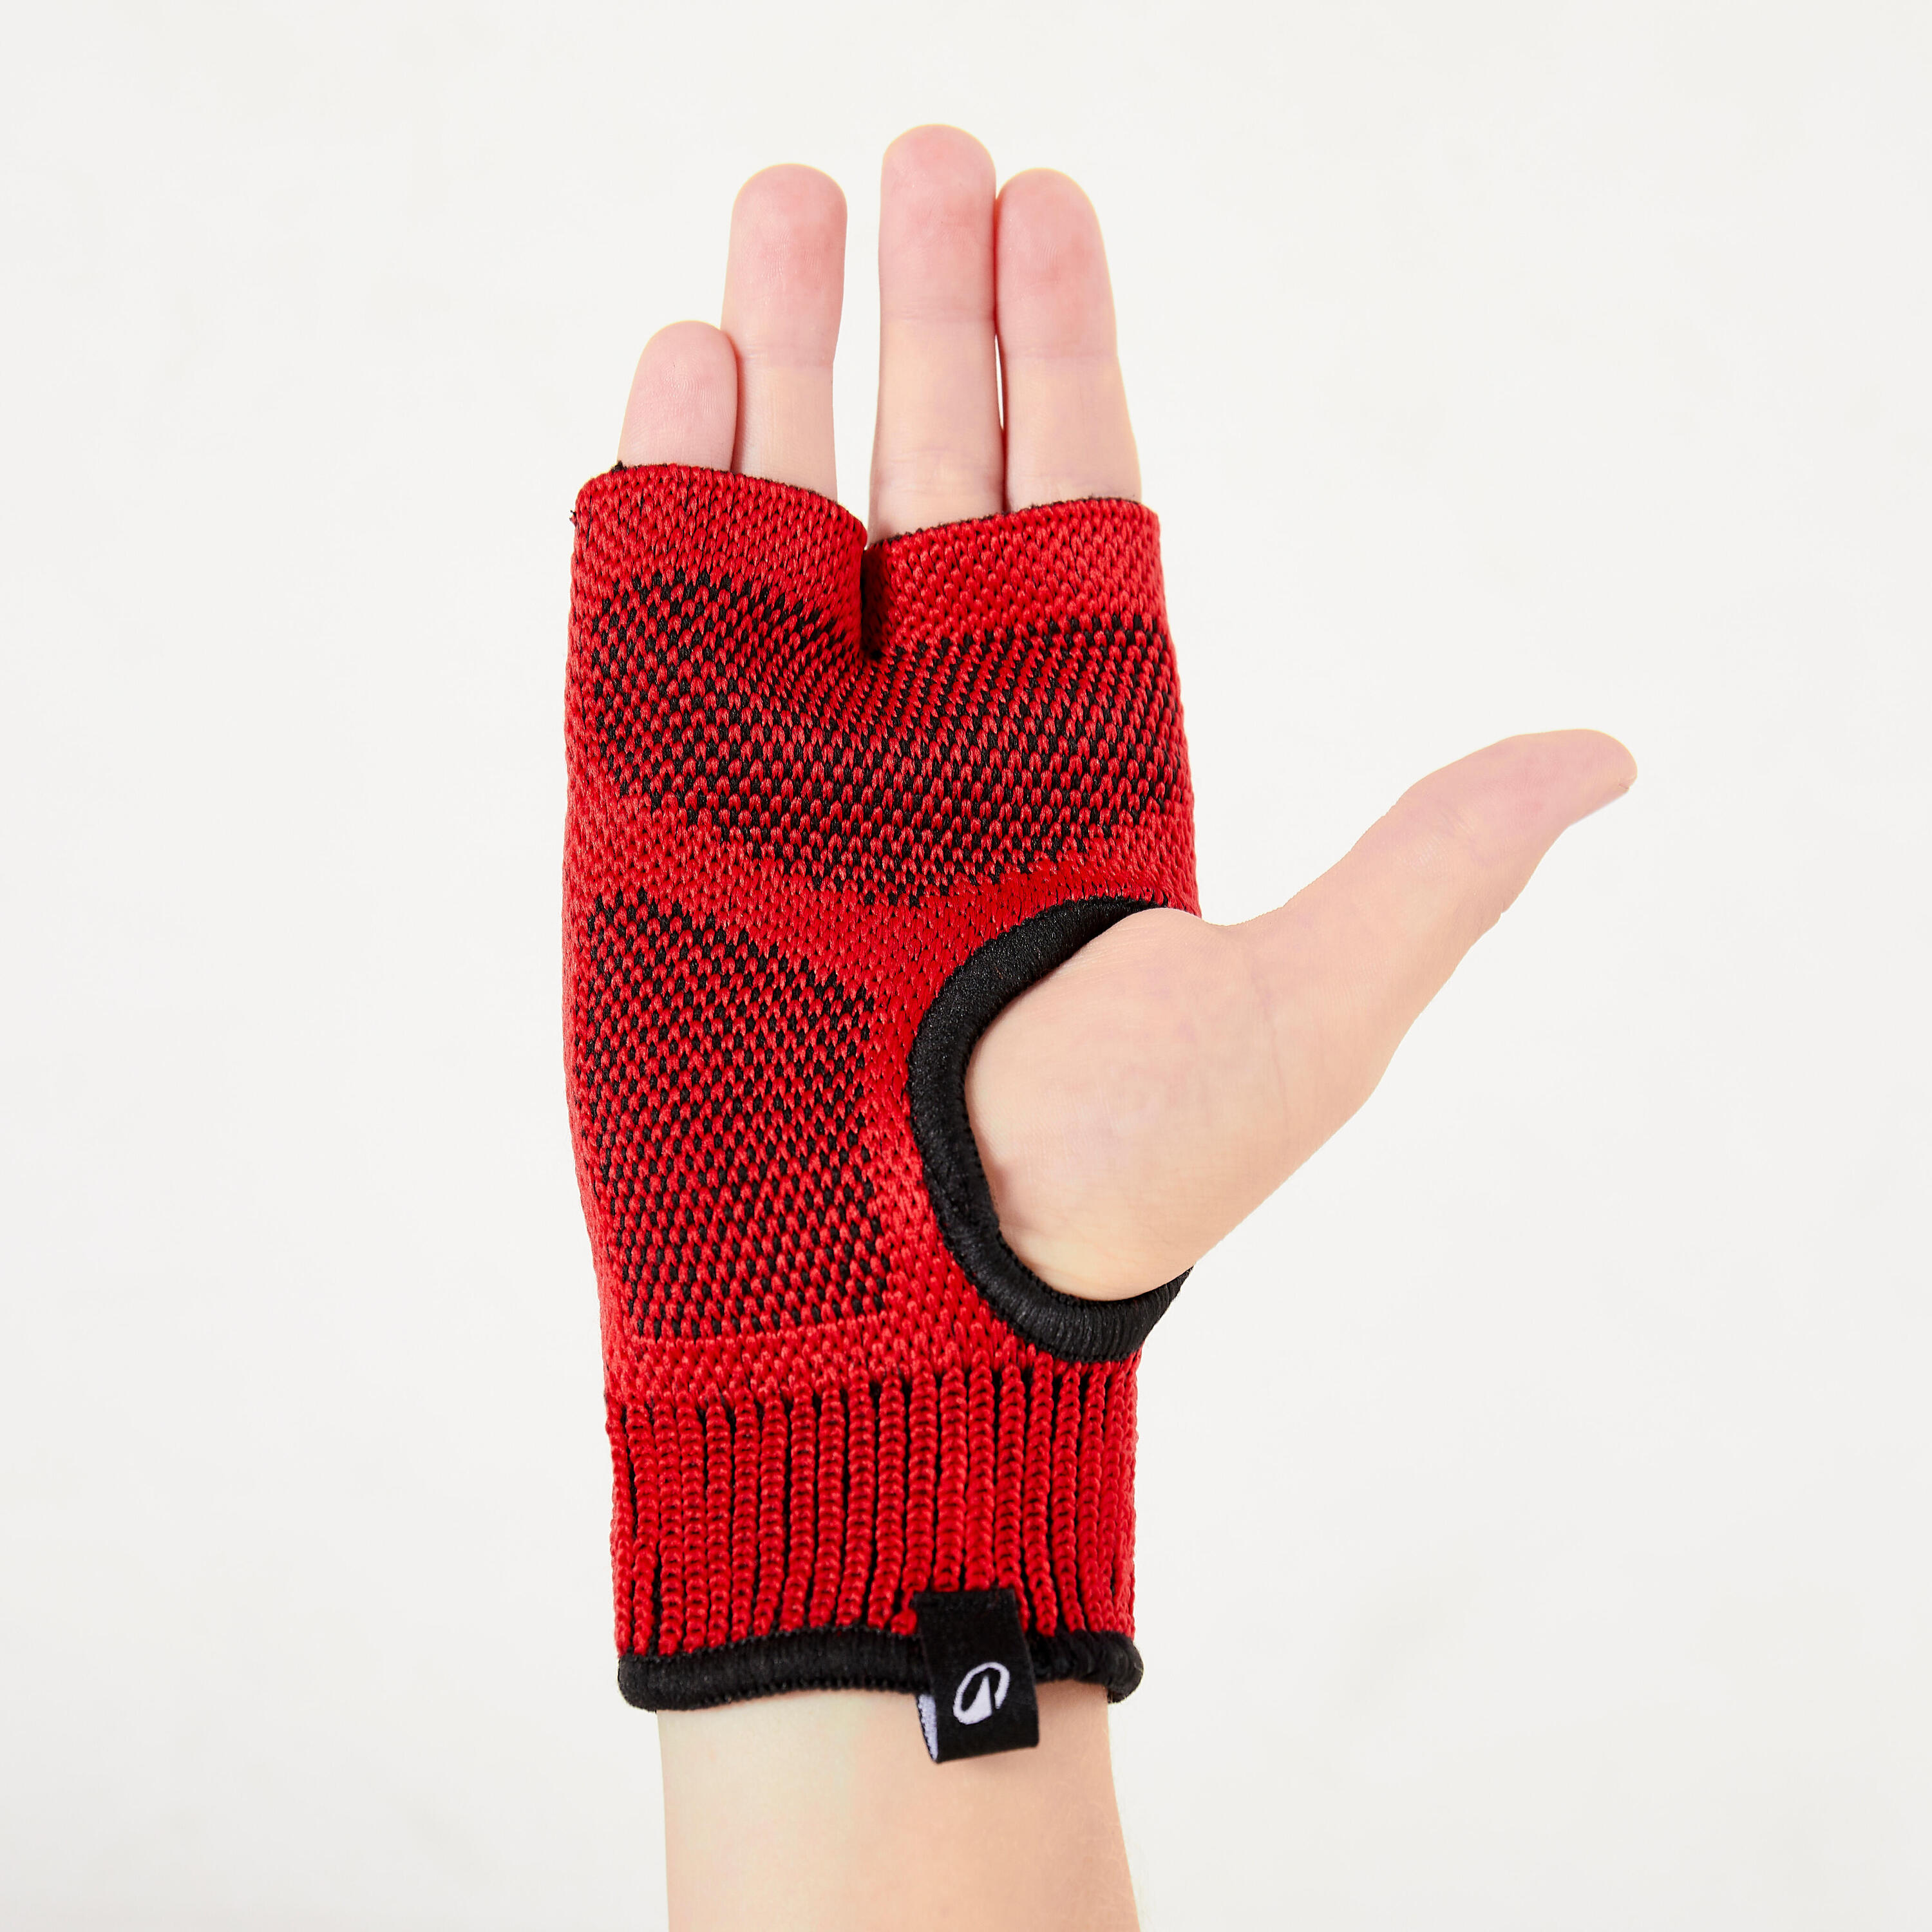 Kids' Boxing Inner Gloves - Red 2/5